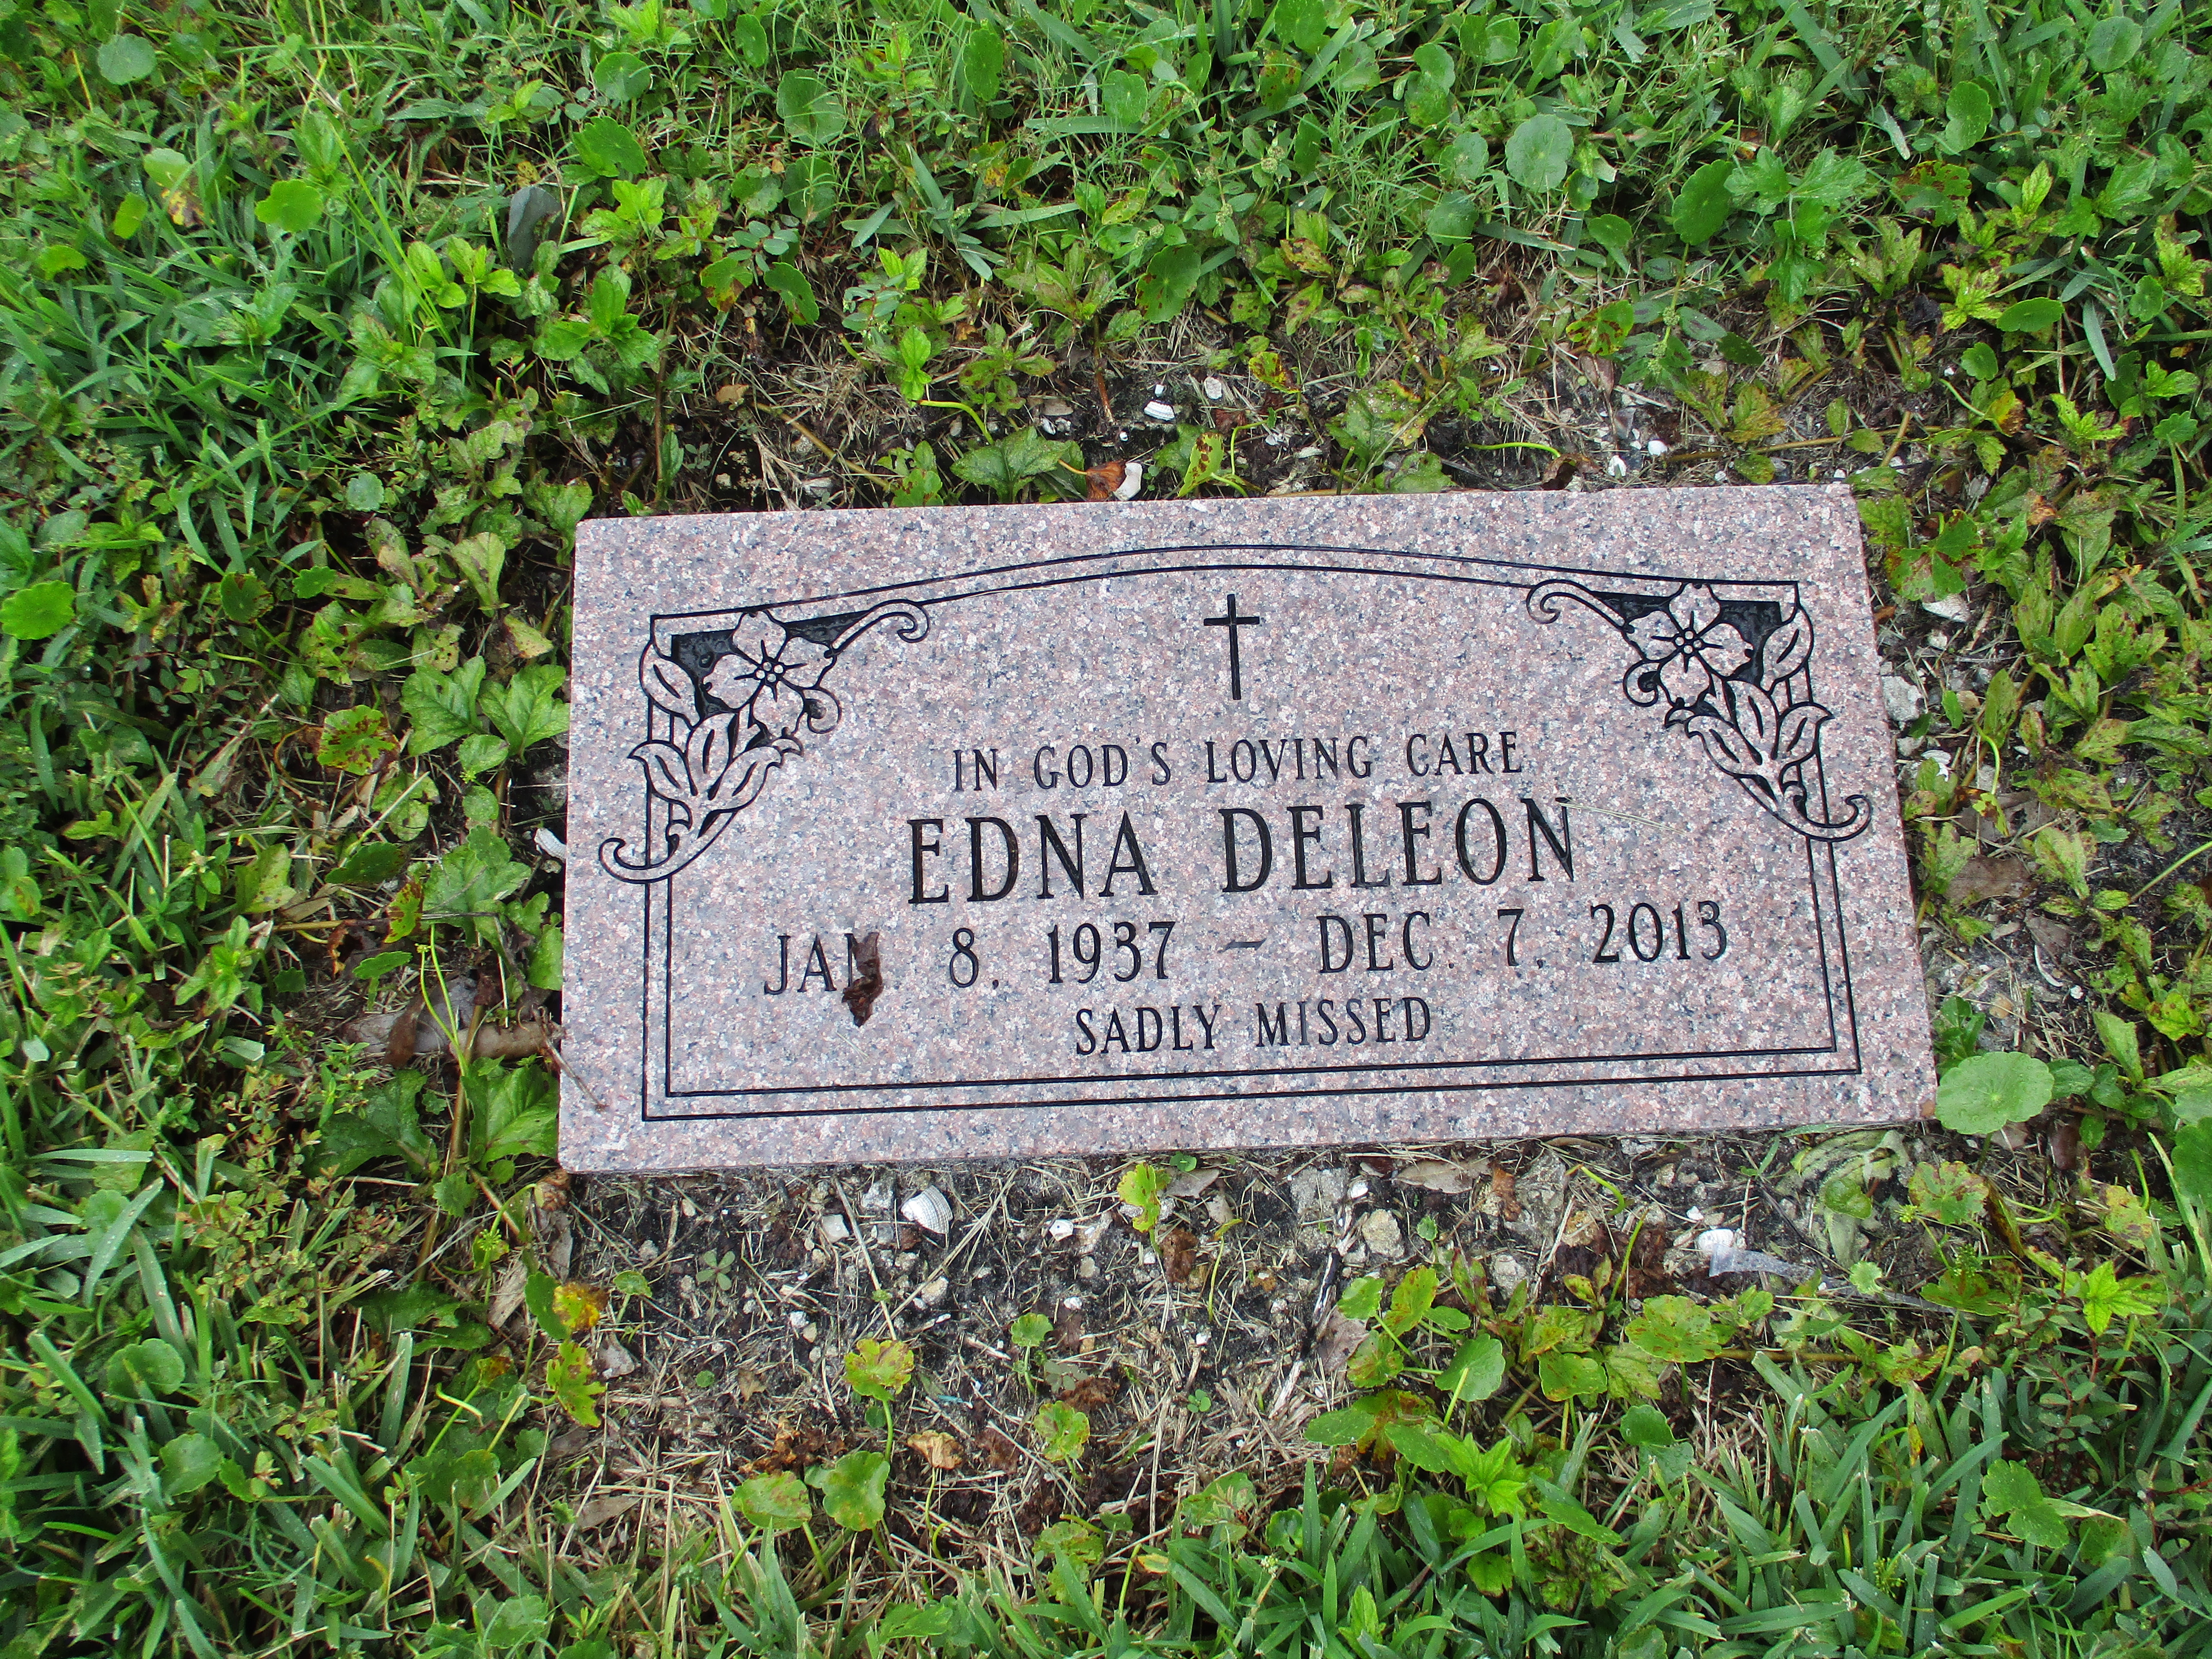 Edna Deleon